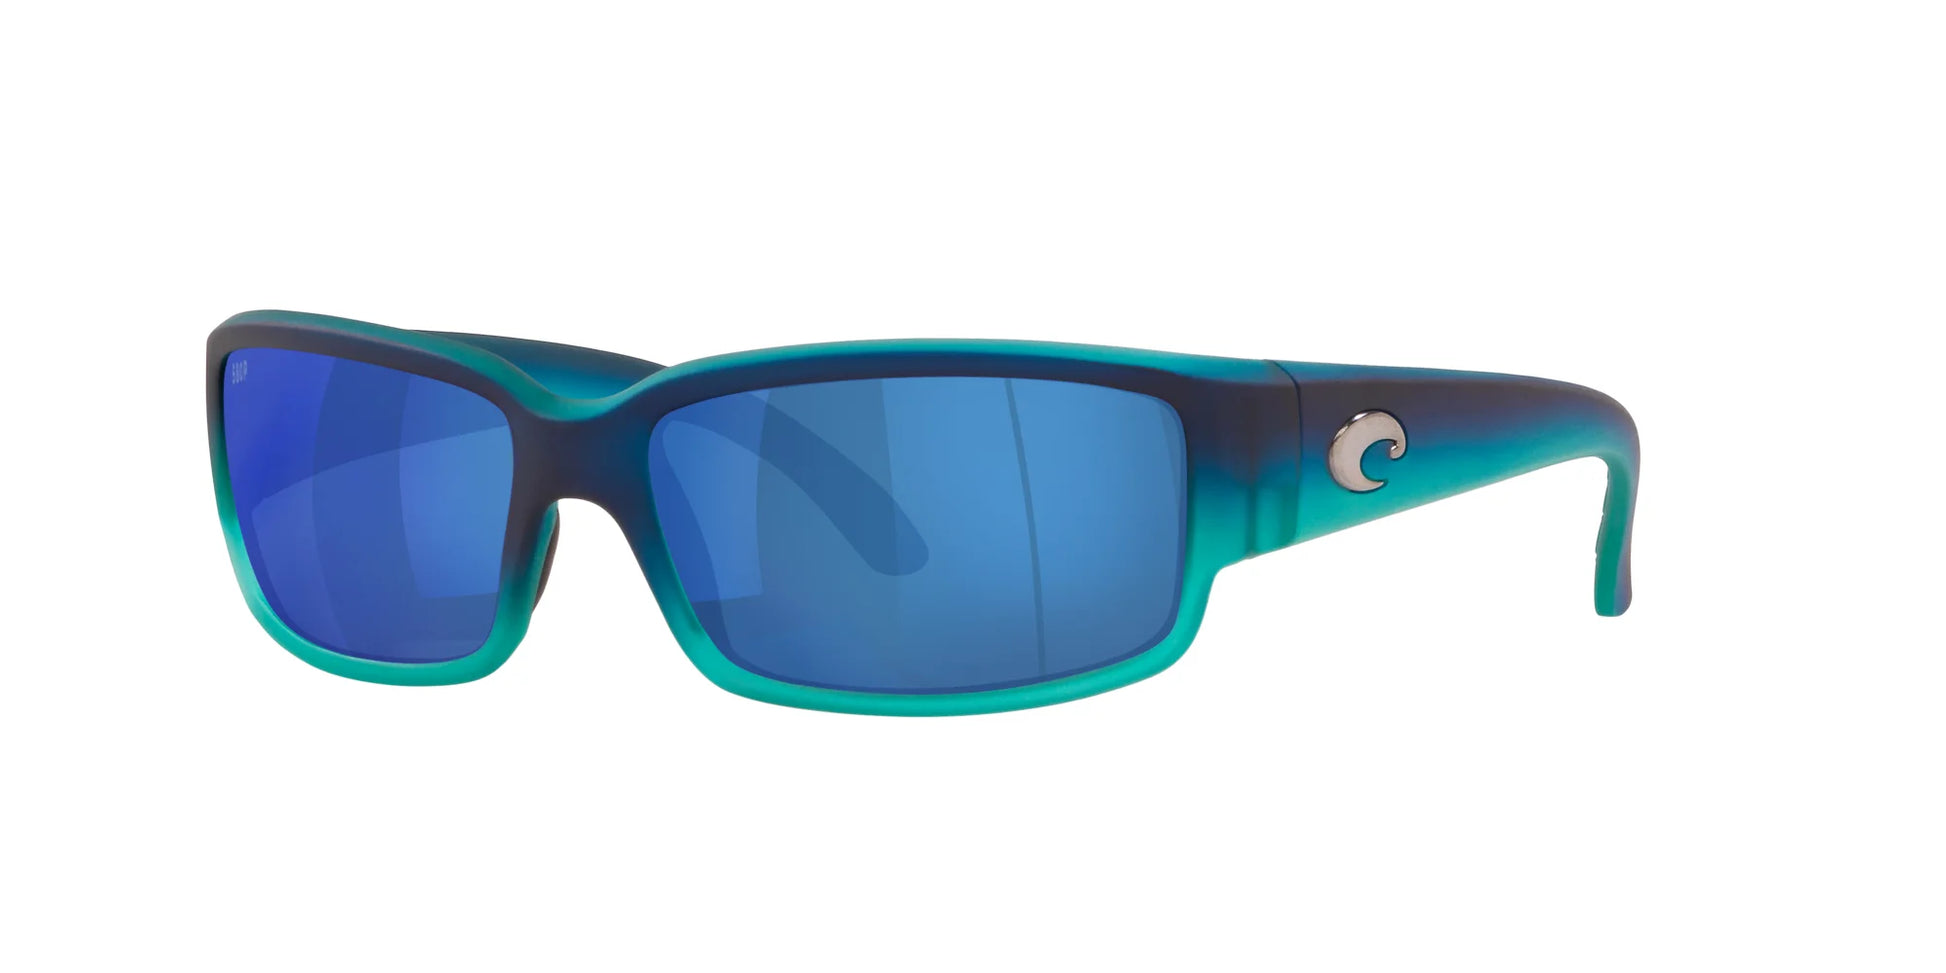 Costa CABALLITO 6S9025 Sunglasses Matte Caribbean Fade / Blue Mirror